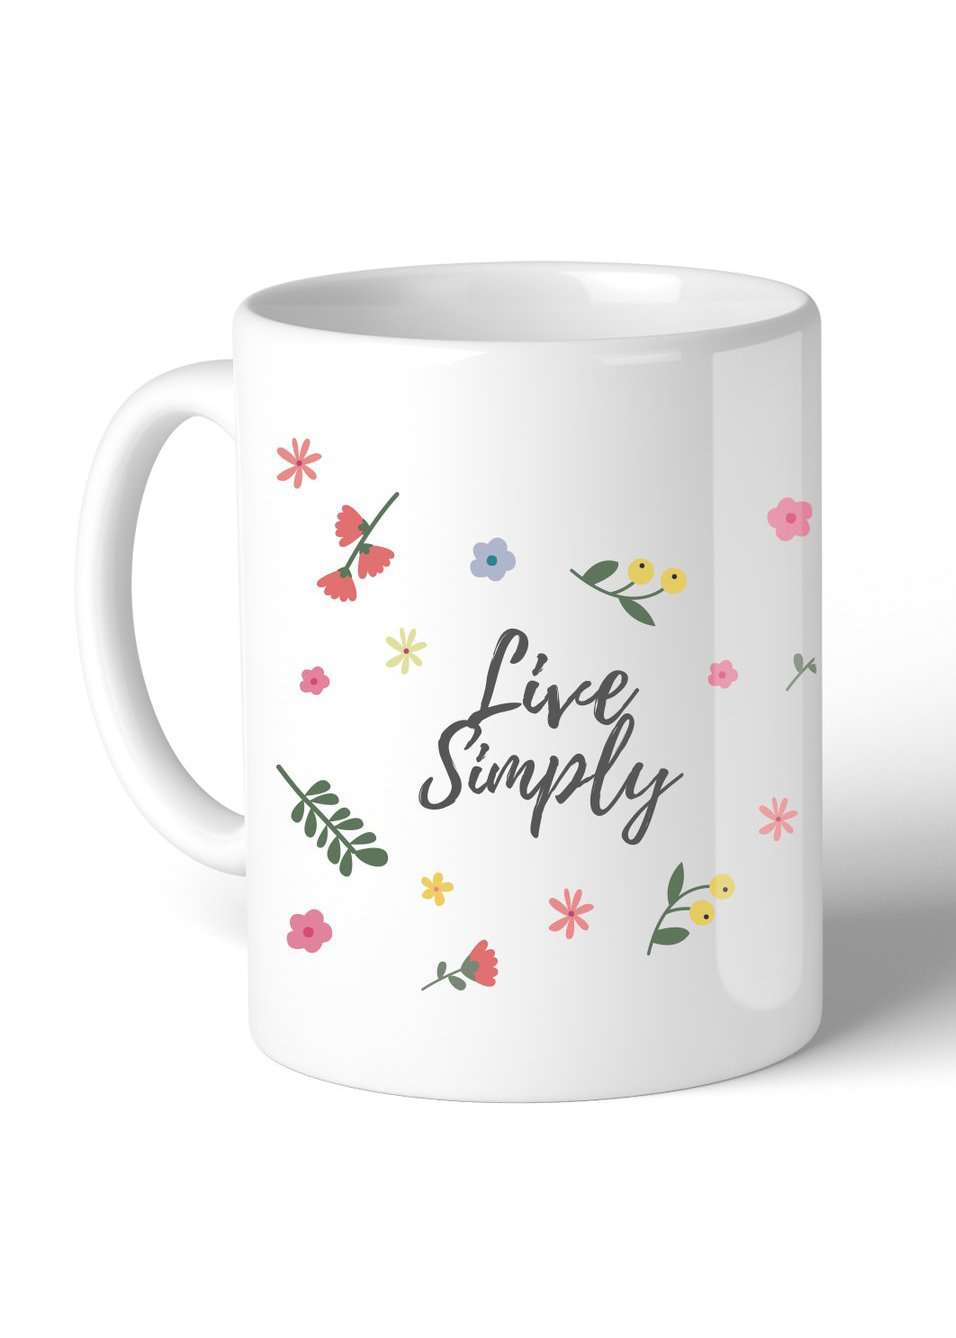 Live simply floral and white ceramic mug